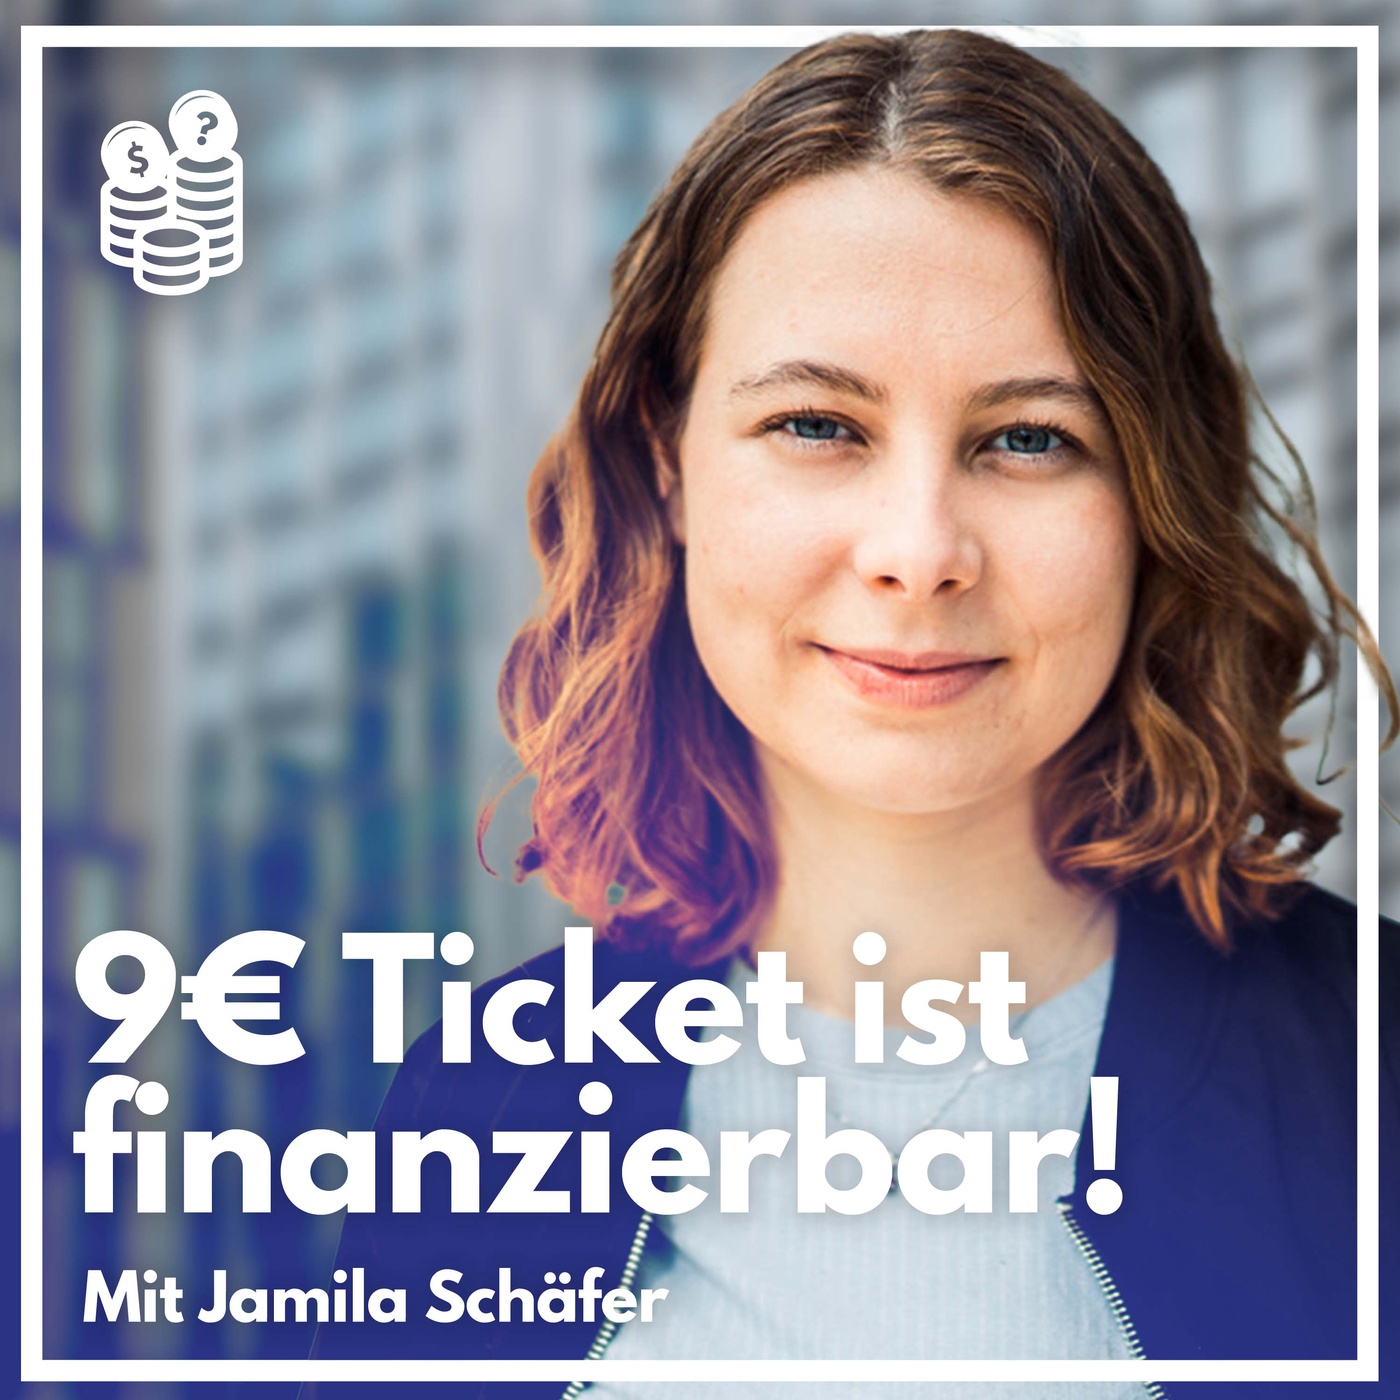 Das 9€ Ticket ist finanzierbar! | Mit Jamila Schäfer (Grüne)